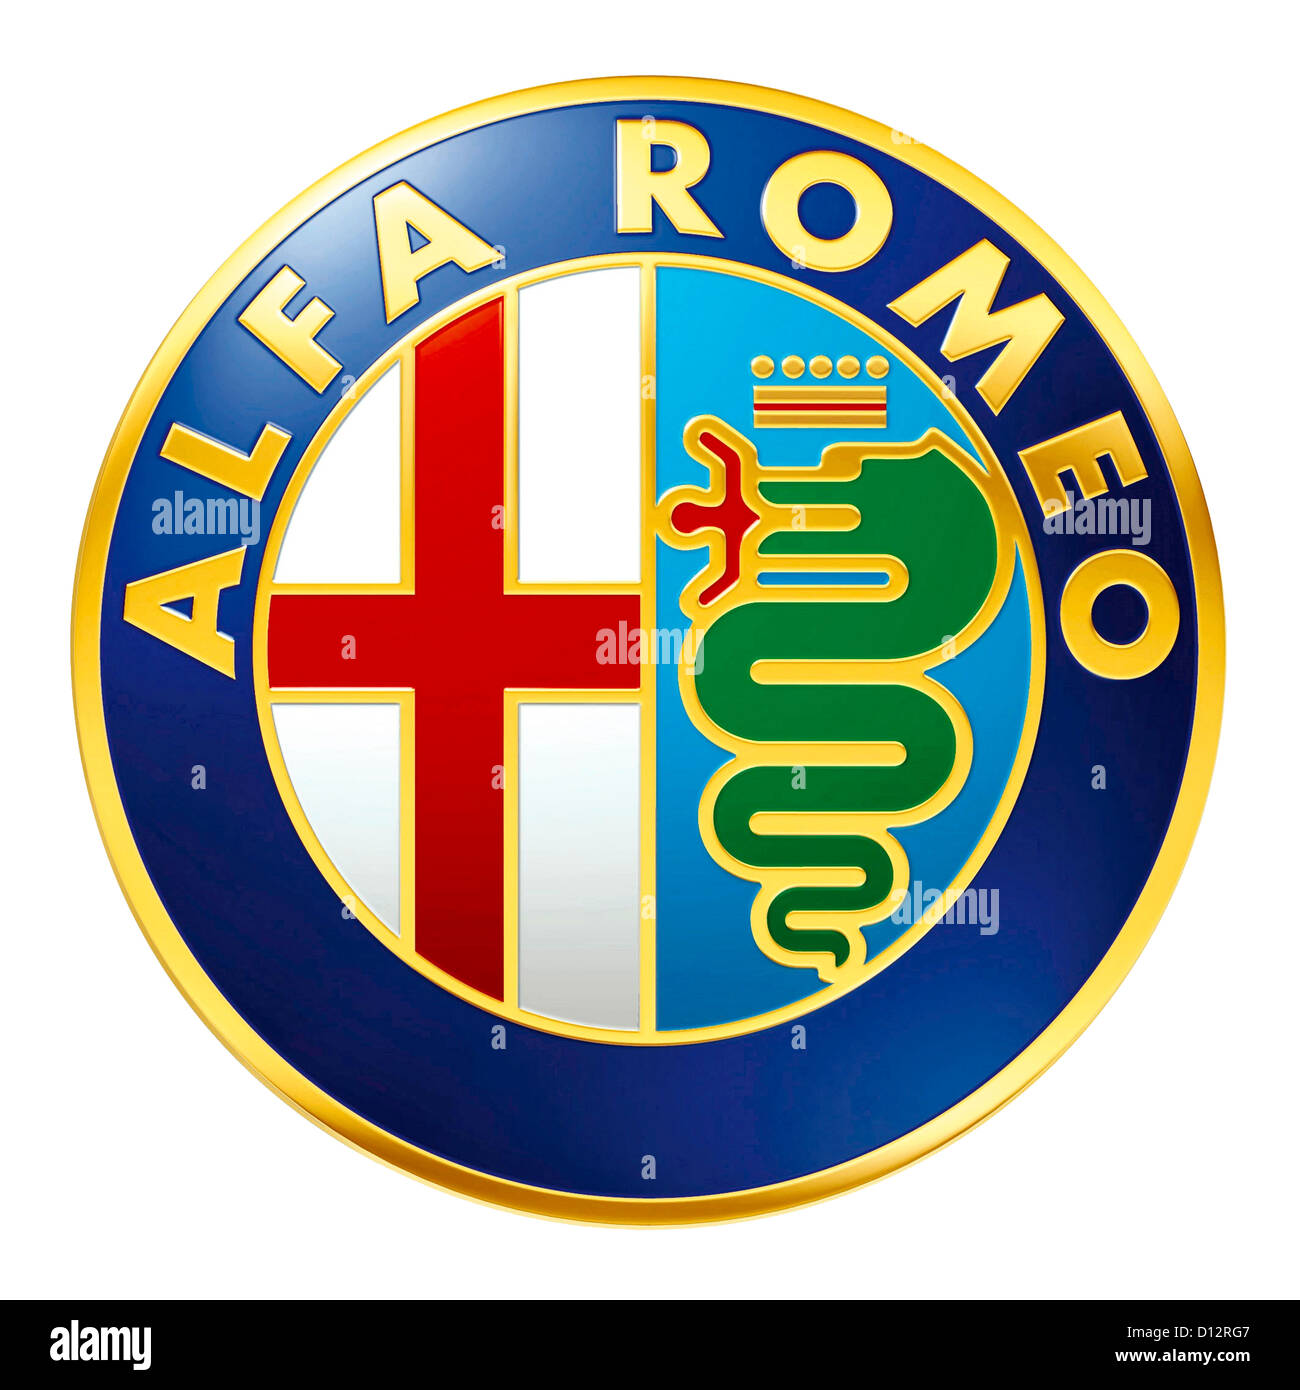 Logo de la marque Alfa Romeo du constructeur automobile italien Fiat Group dont le siège est à Turin. Banque D'Images